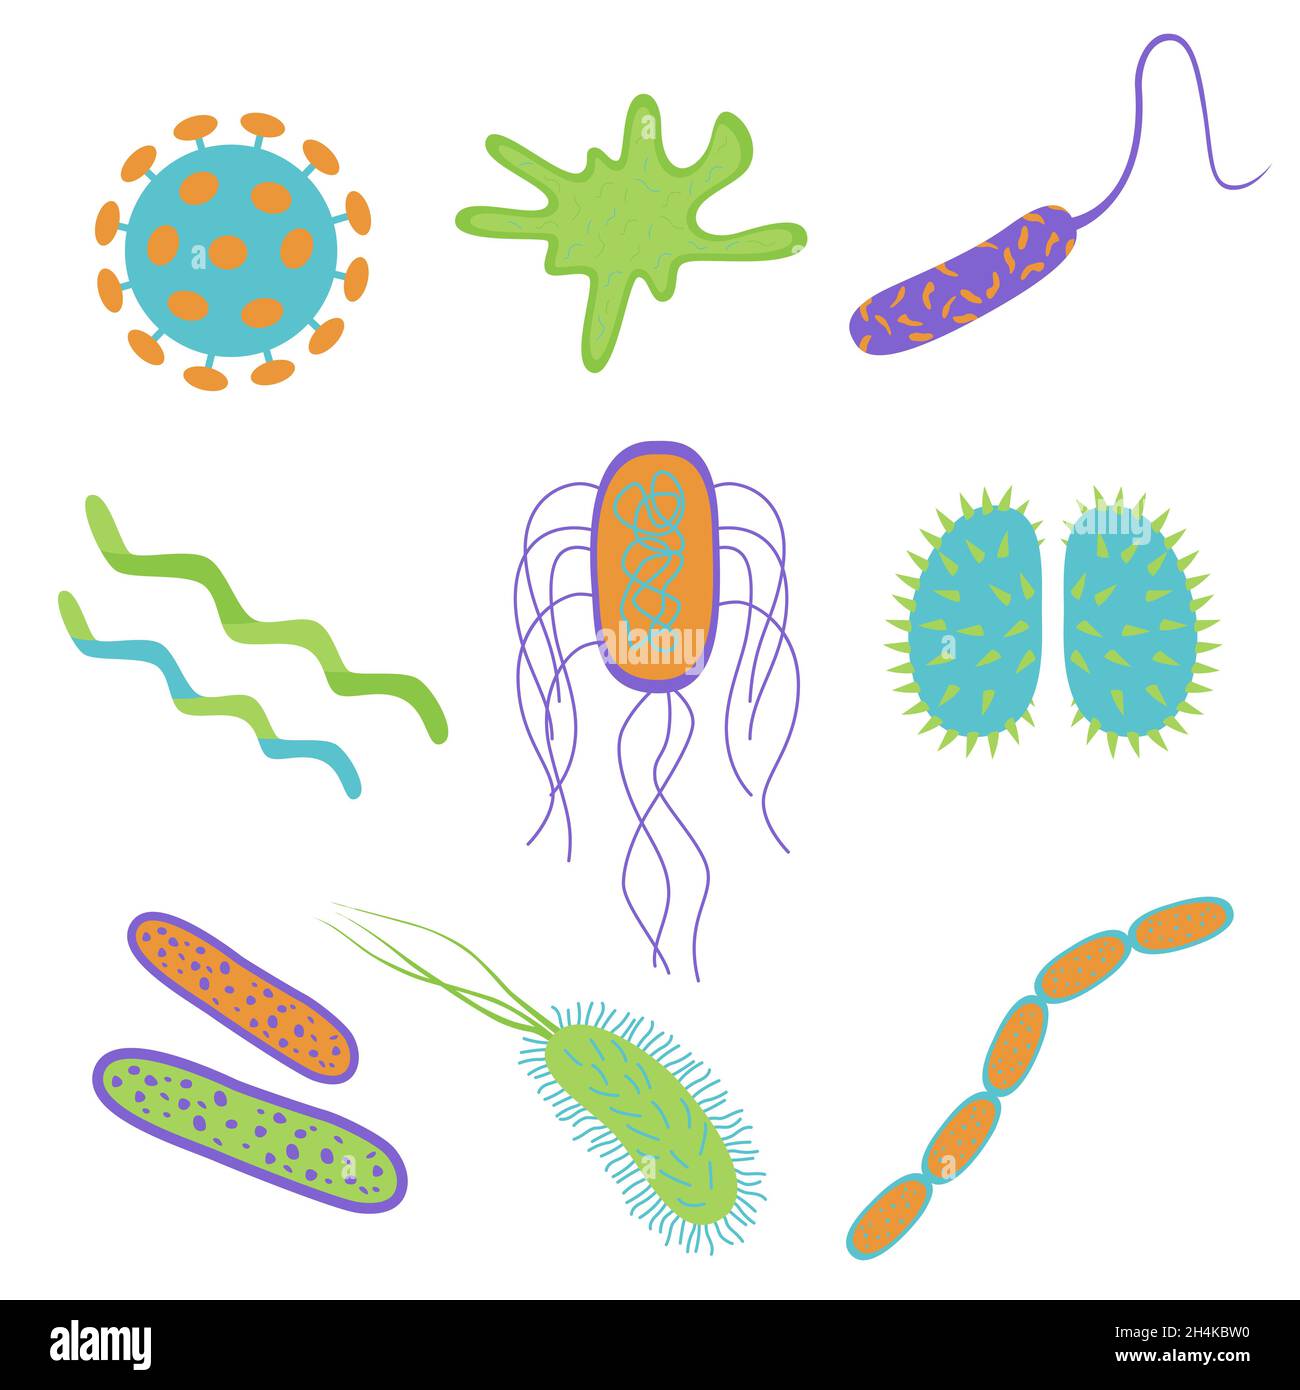 Flache Cartoon-Design Keime und Bakterien Symbole isoliert auf weißem Hintergrund gesetzt. Form der Bakterienzelle. Vektordarstellung von Mikroorganismen. Stock Vektor